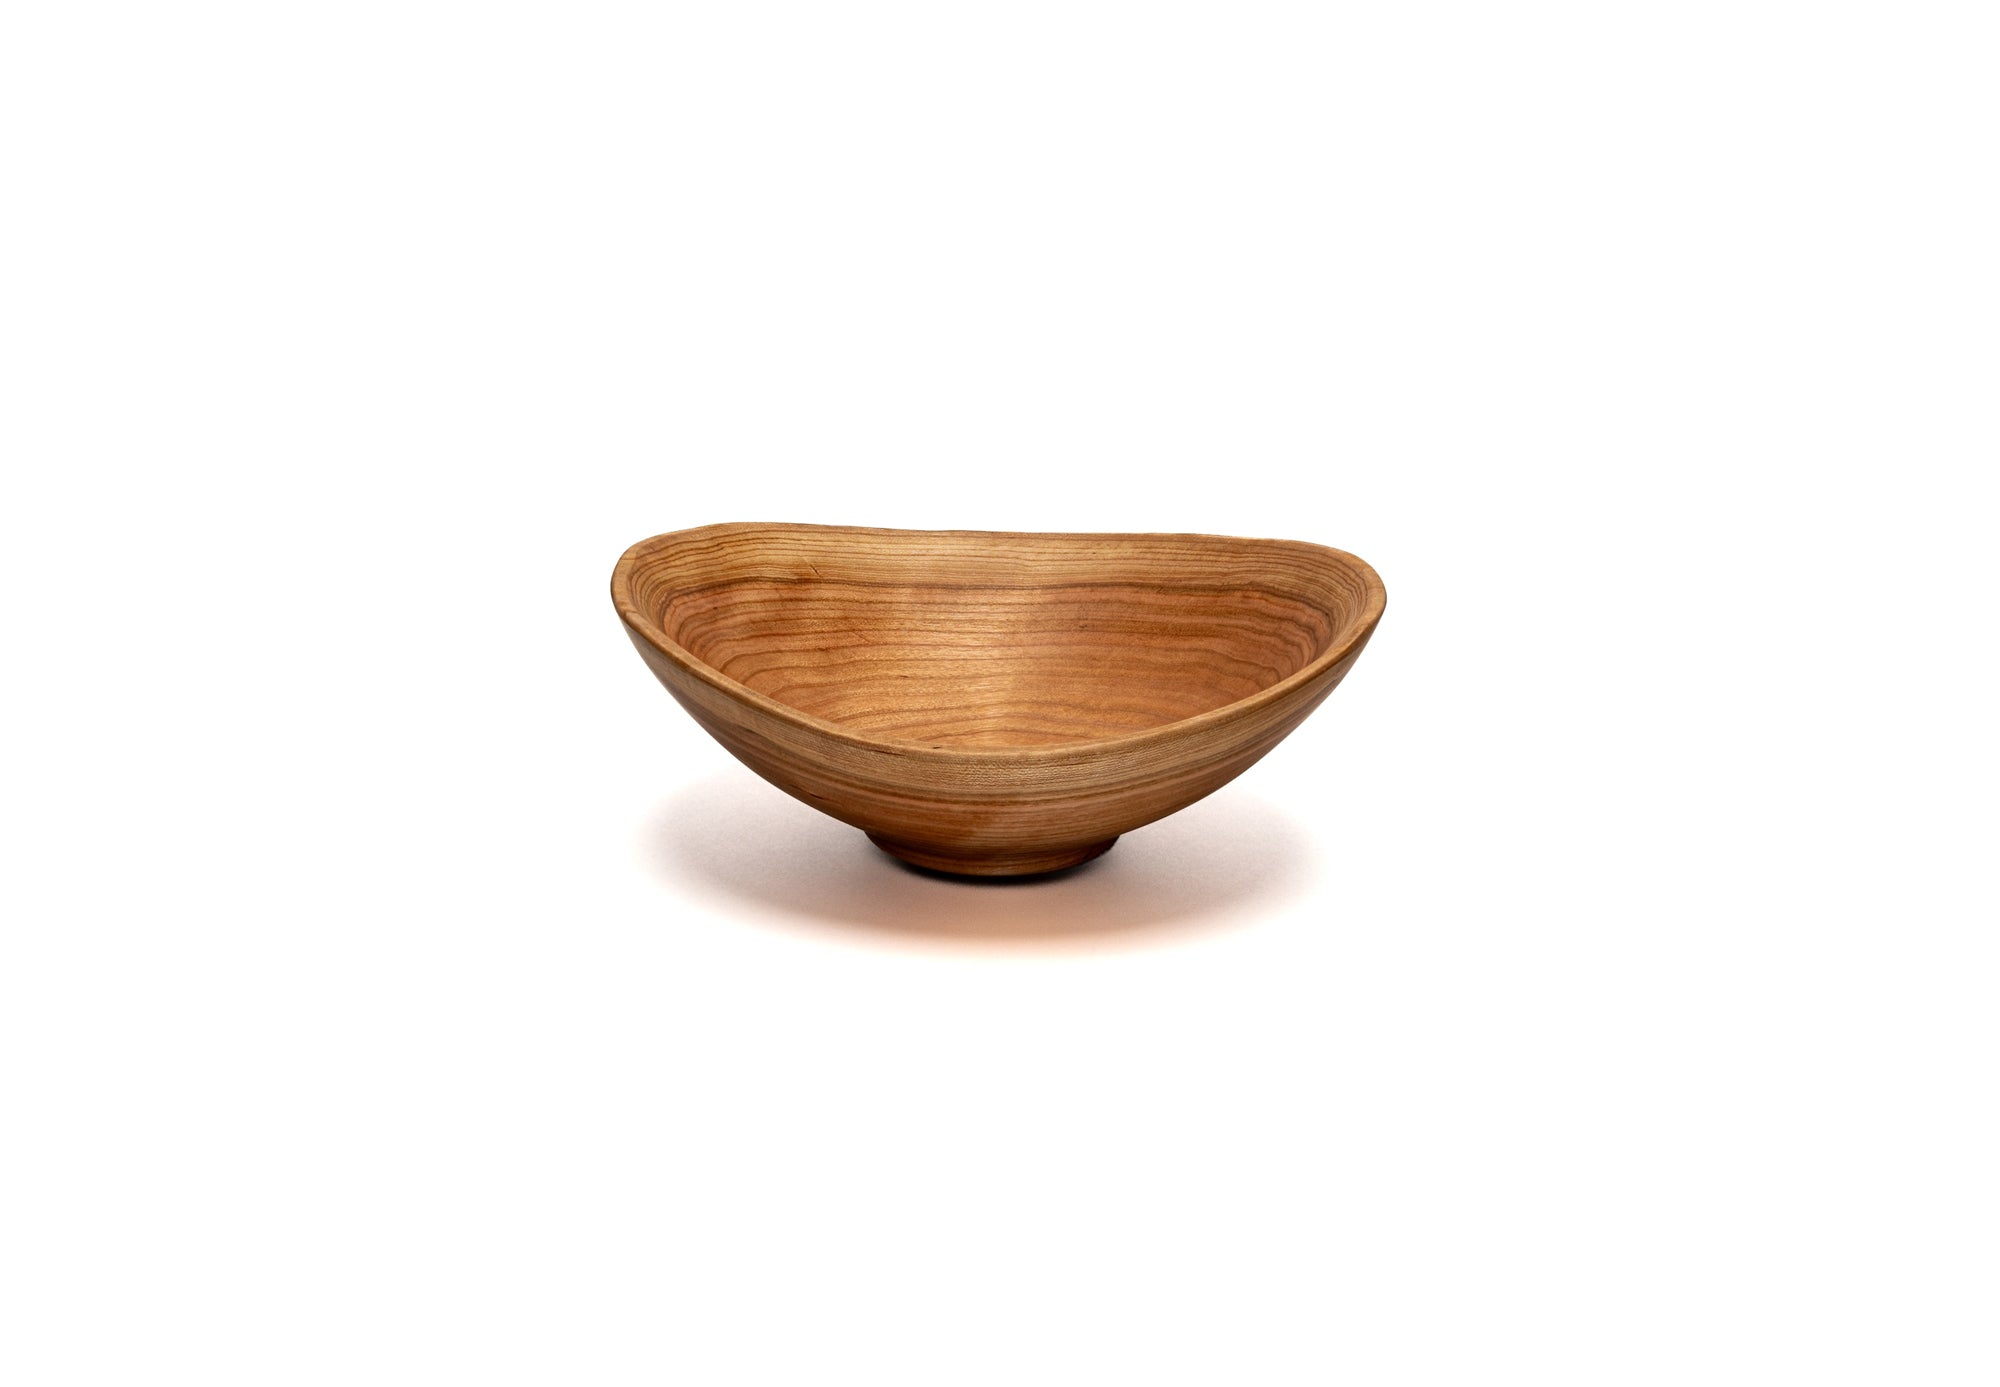 https://andrewpearcebowls.com/cdn/shop/files/Small-Live-Edge-oval-Wooden-Bowl-in-Cherry.jpg?v=1697120407